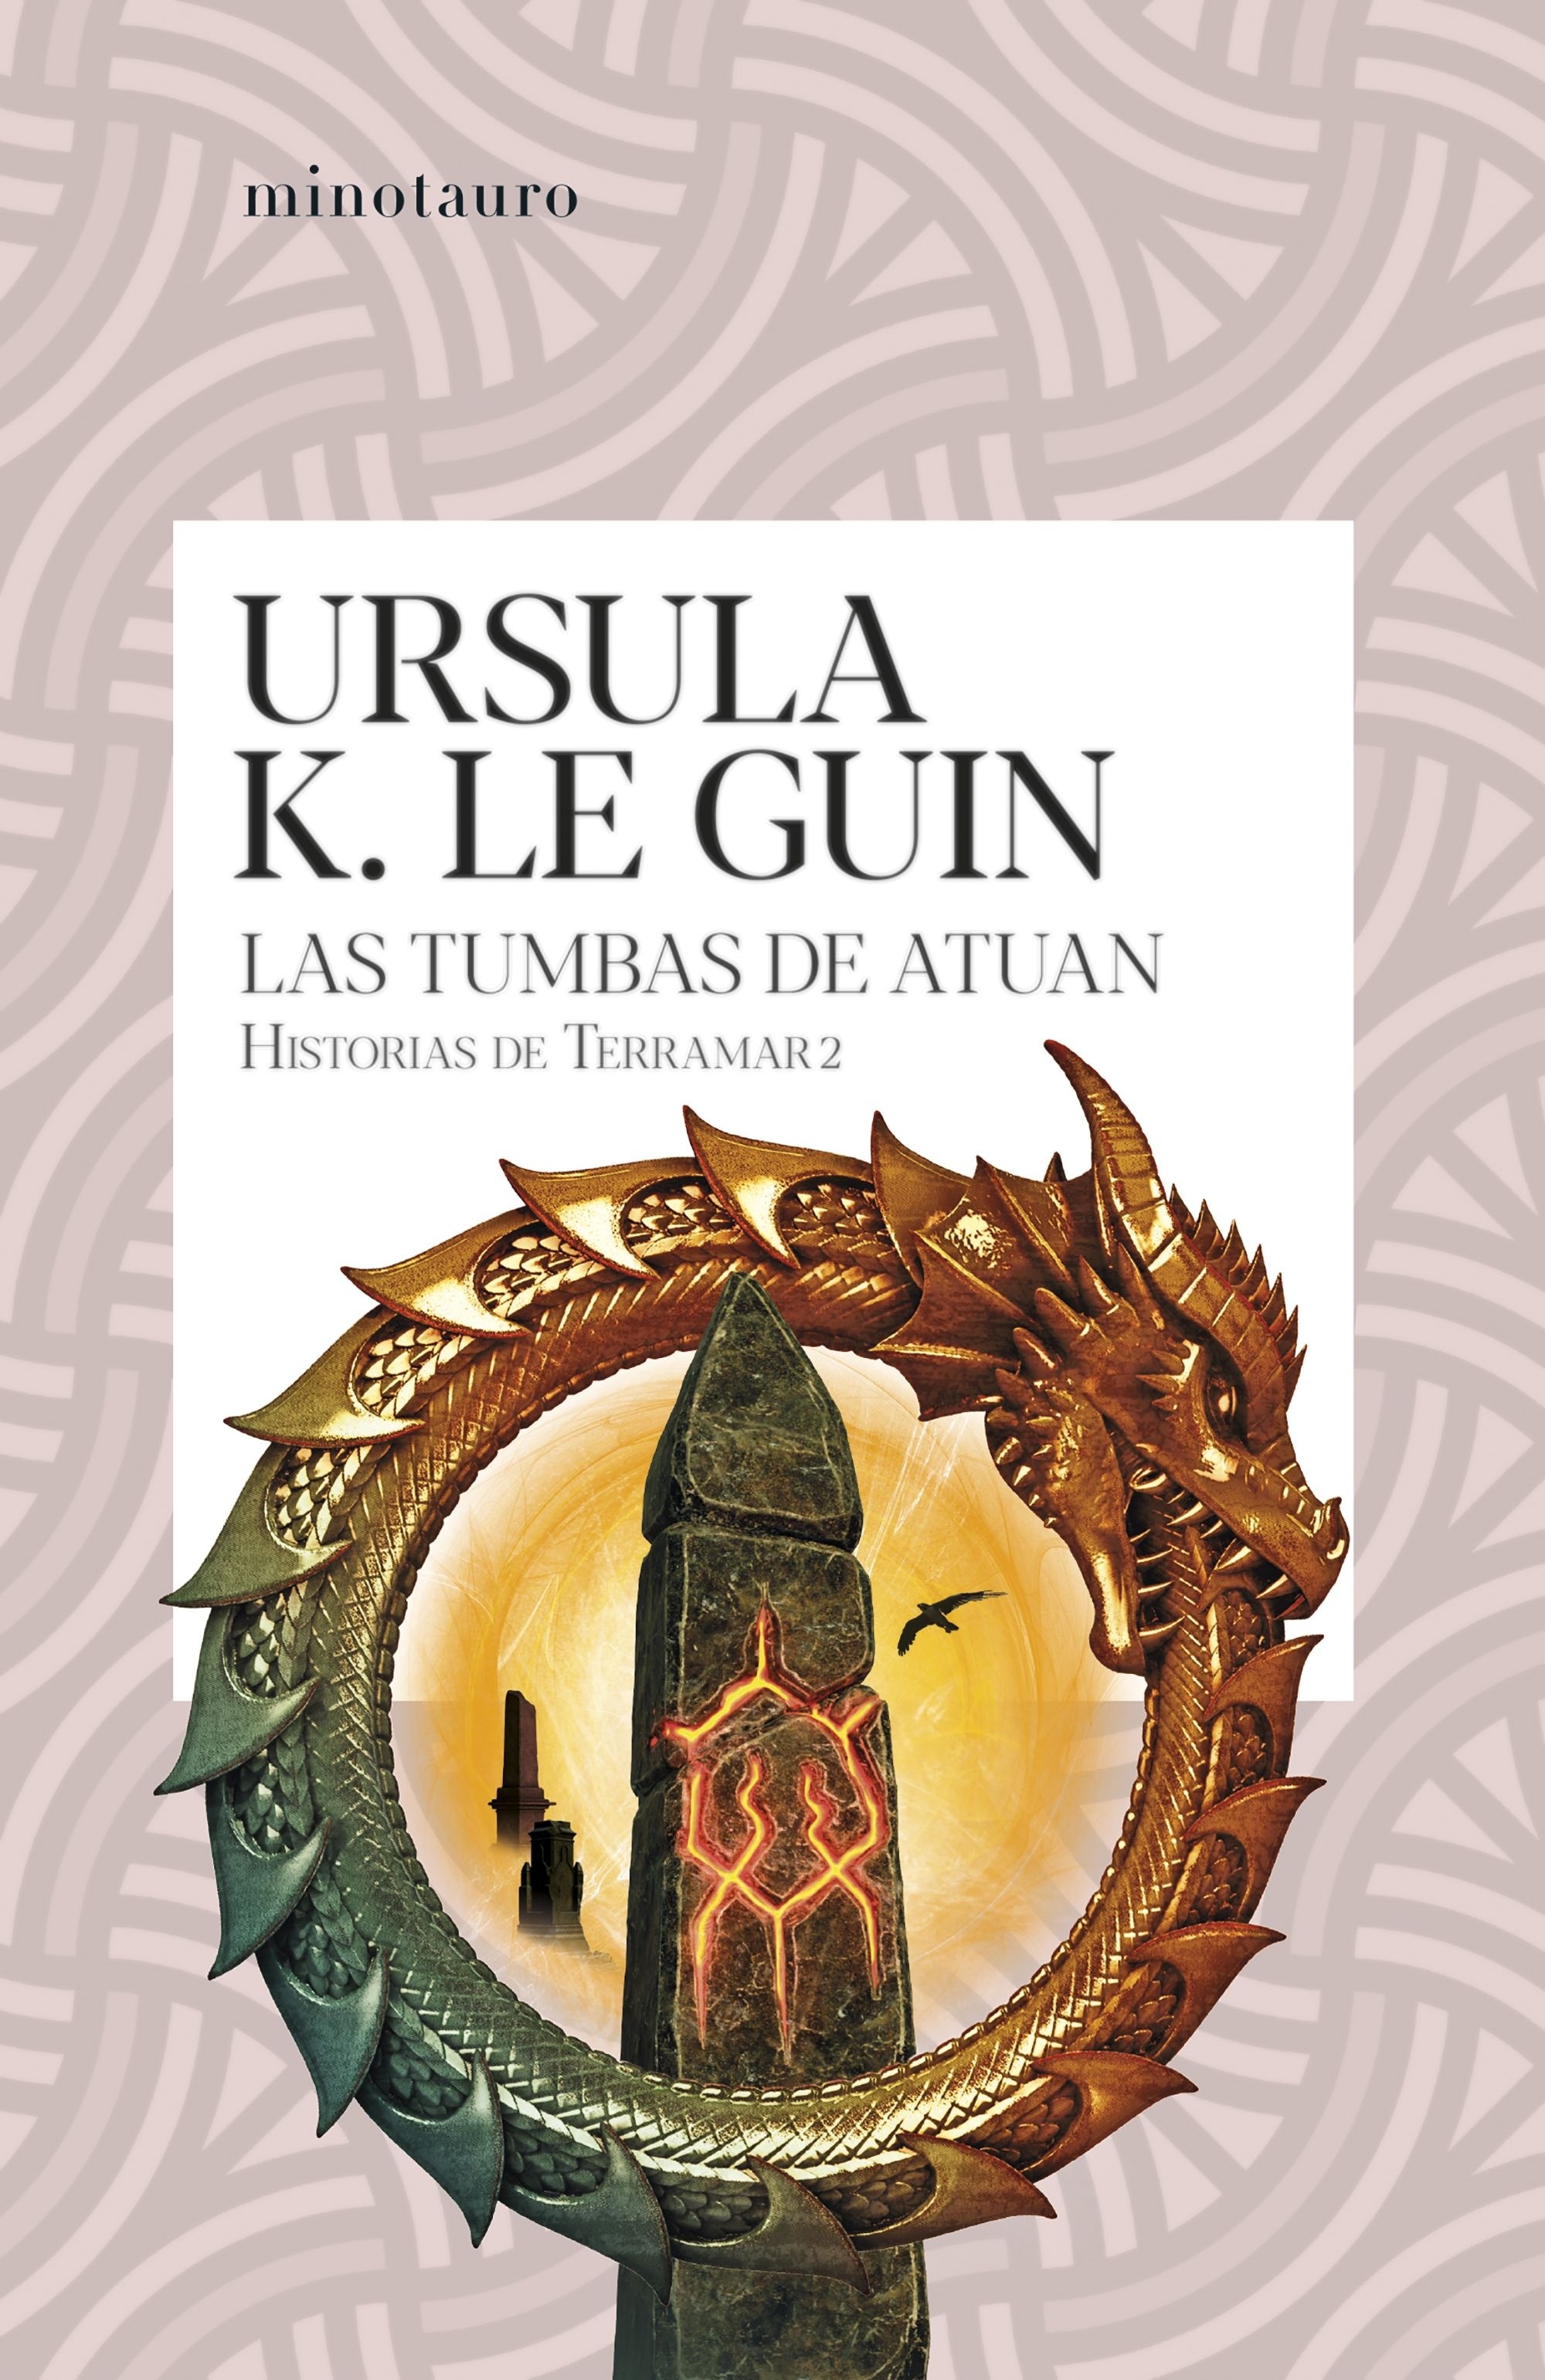 Tumbas de Atuan, Las "Historias de Terramar II". 